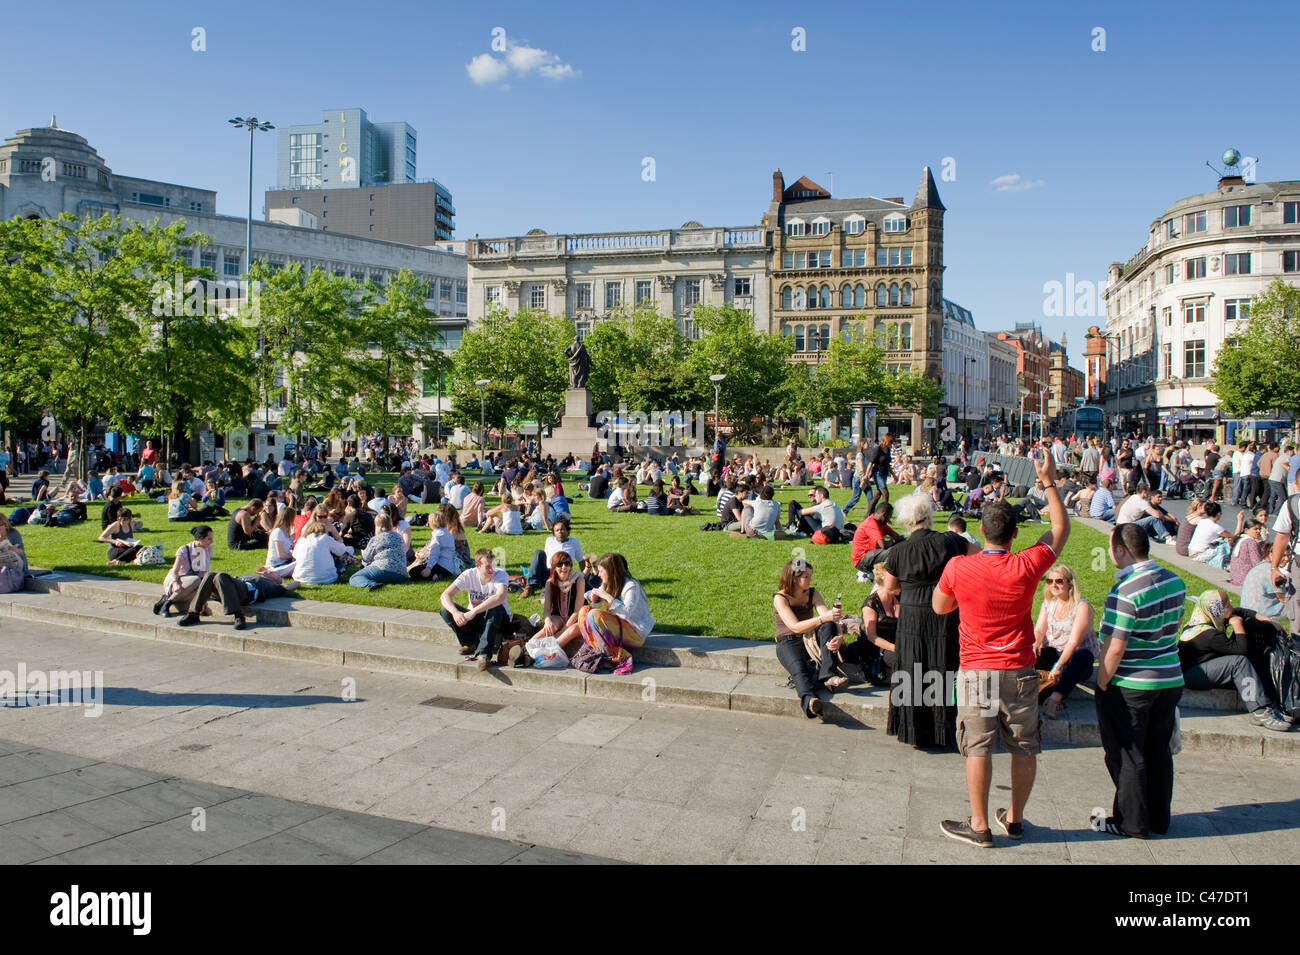 Les gens se rassemblent dans les jardins de Piccadilly, Manchester sur une chaude journée ensoleillée. Banque D'Images